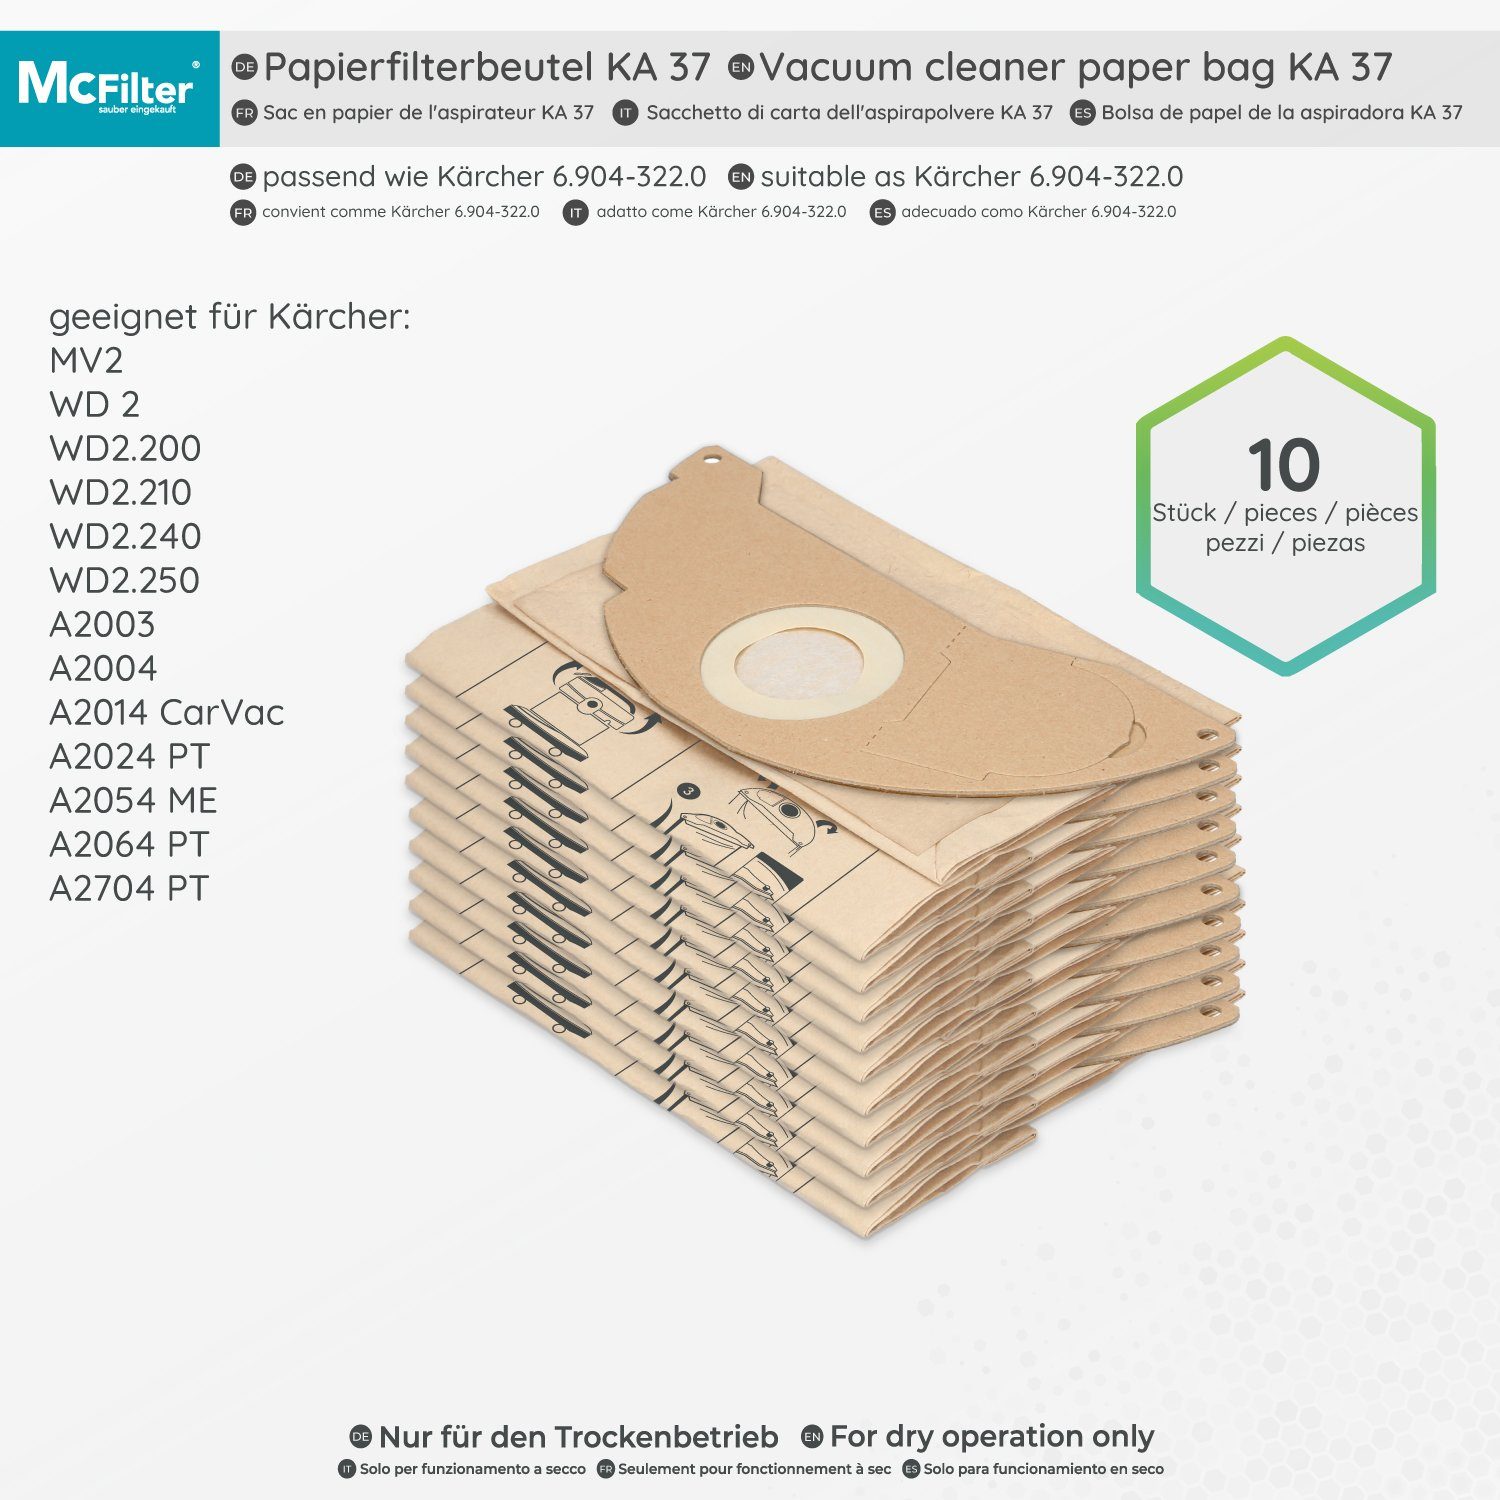 McFilter Staubsaugerbeutel 2704 Formstabile PT, Filter, für A2704 Hohe + Deckscheibe, 11 passend Reißfestigkeit, (10 Stück) 2-lagig Kärcher St., 1 A